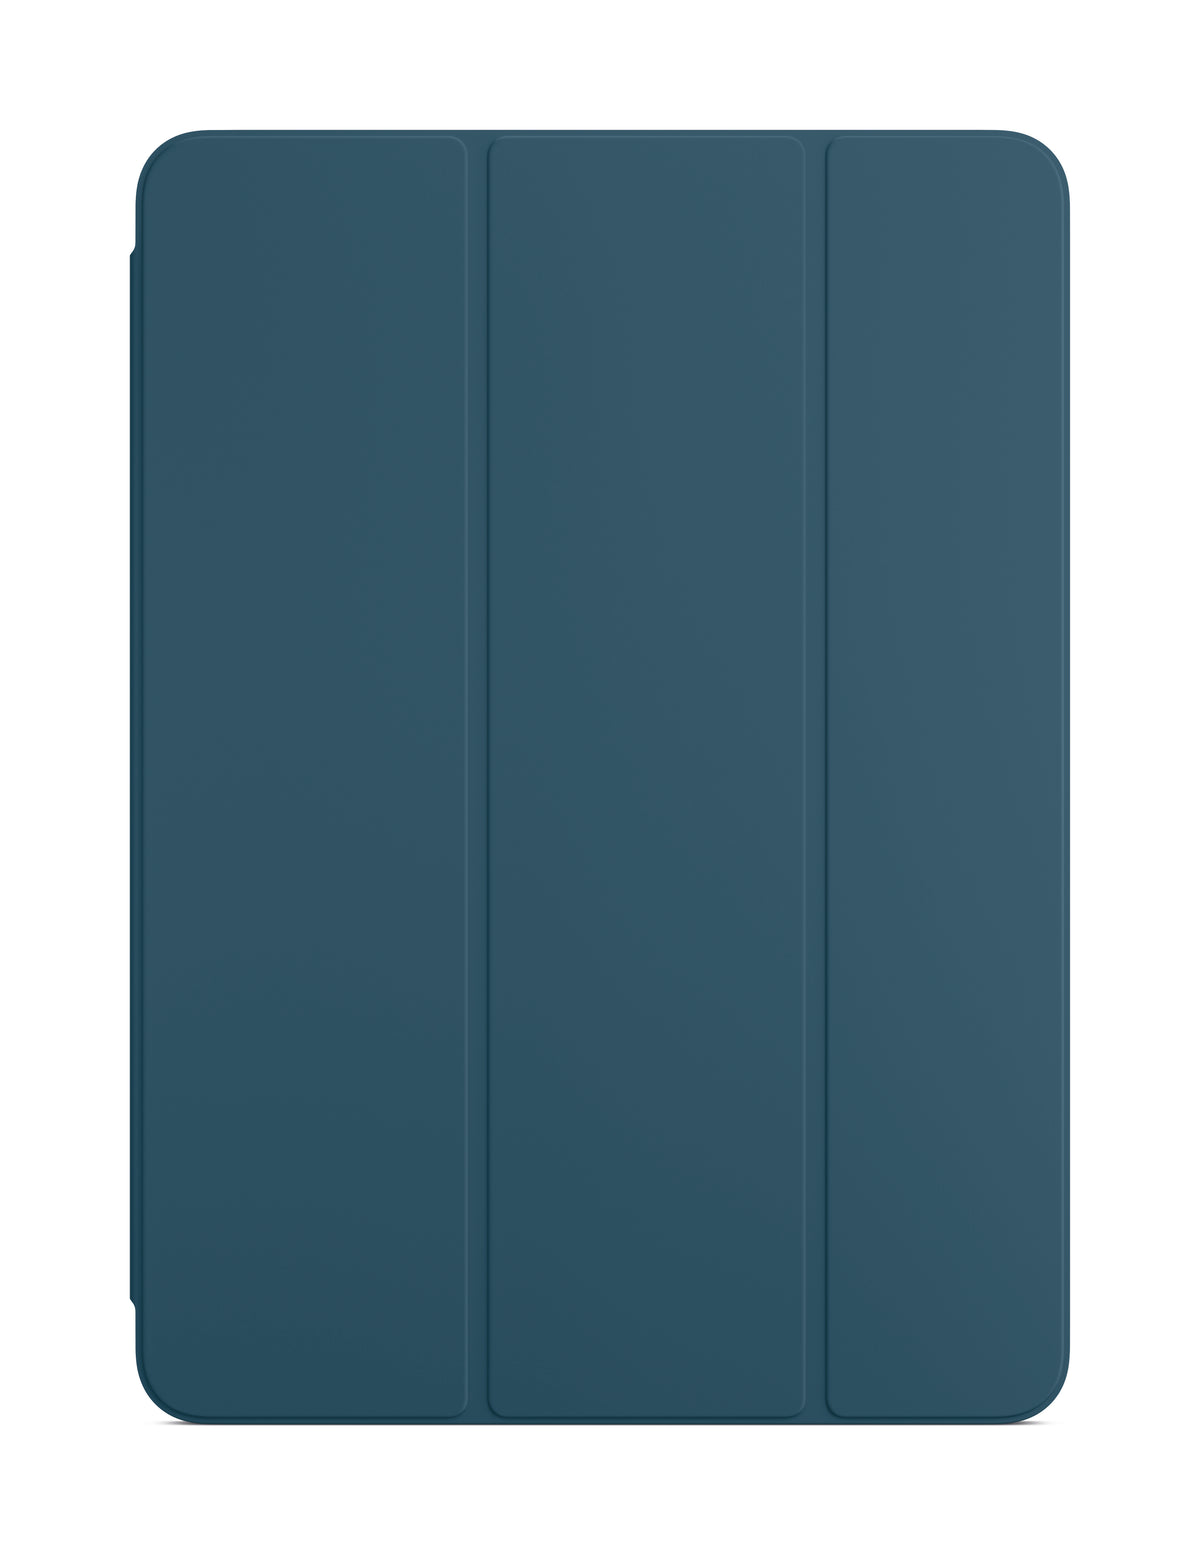 Smart Folio For iPad 11inch (4th Gen) - Marine Blue